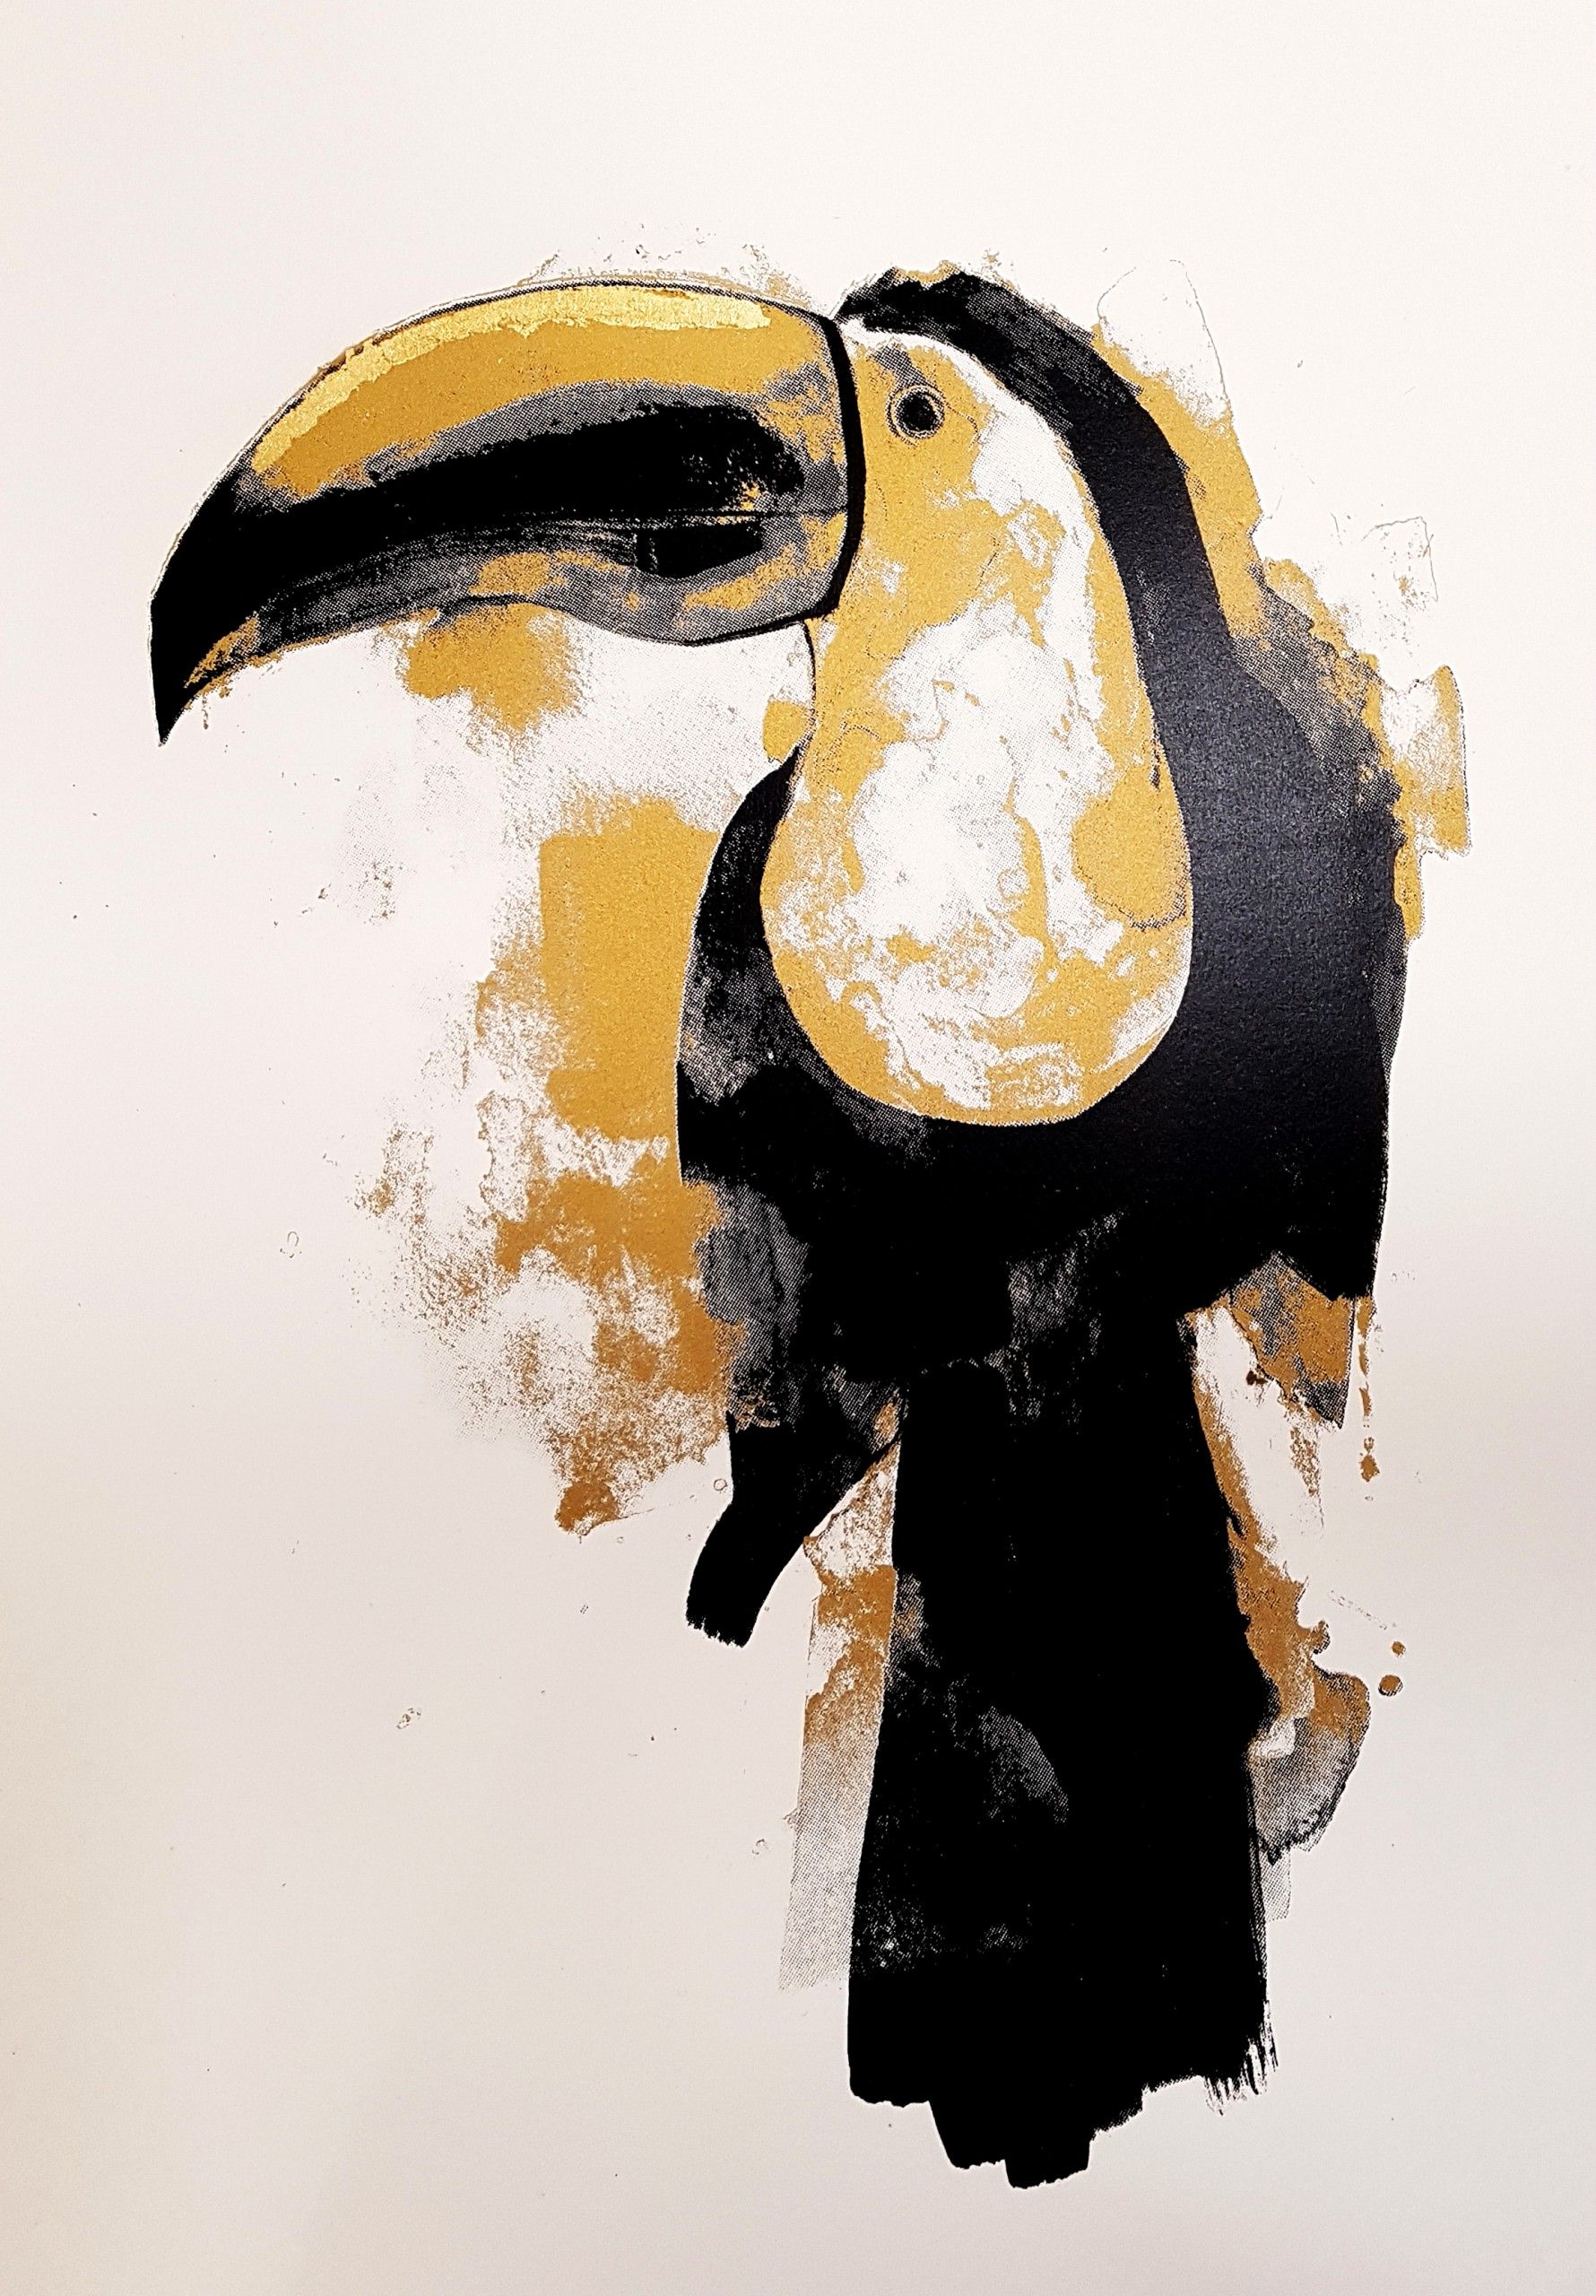 Toucan gold by Gavin Dobson